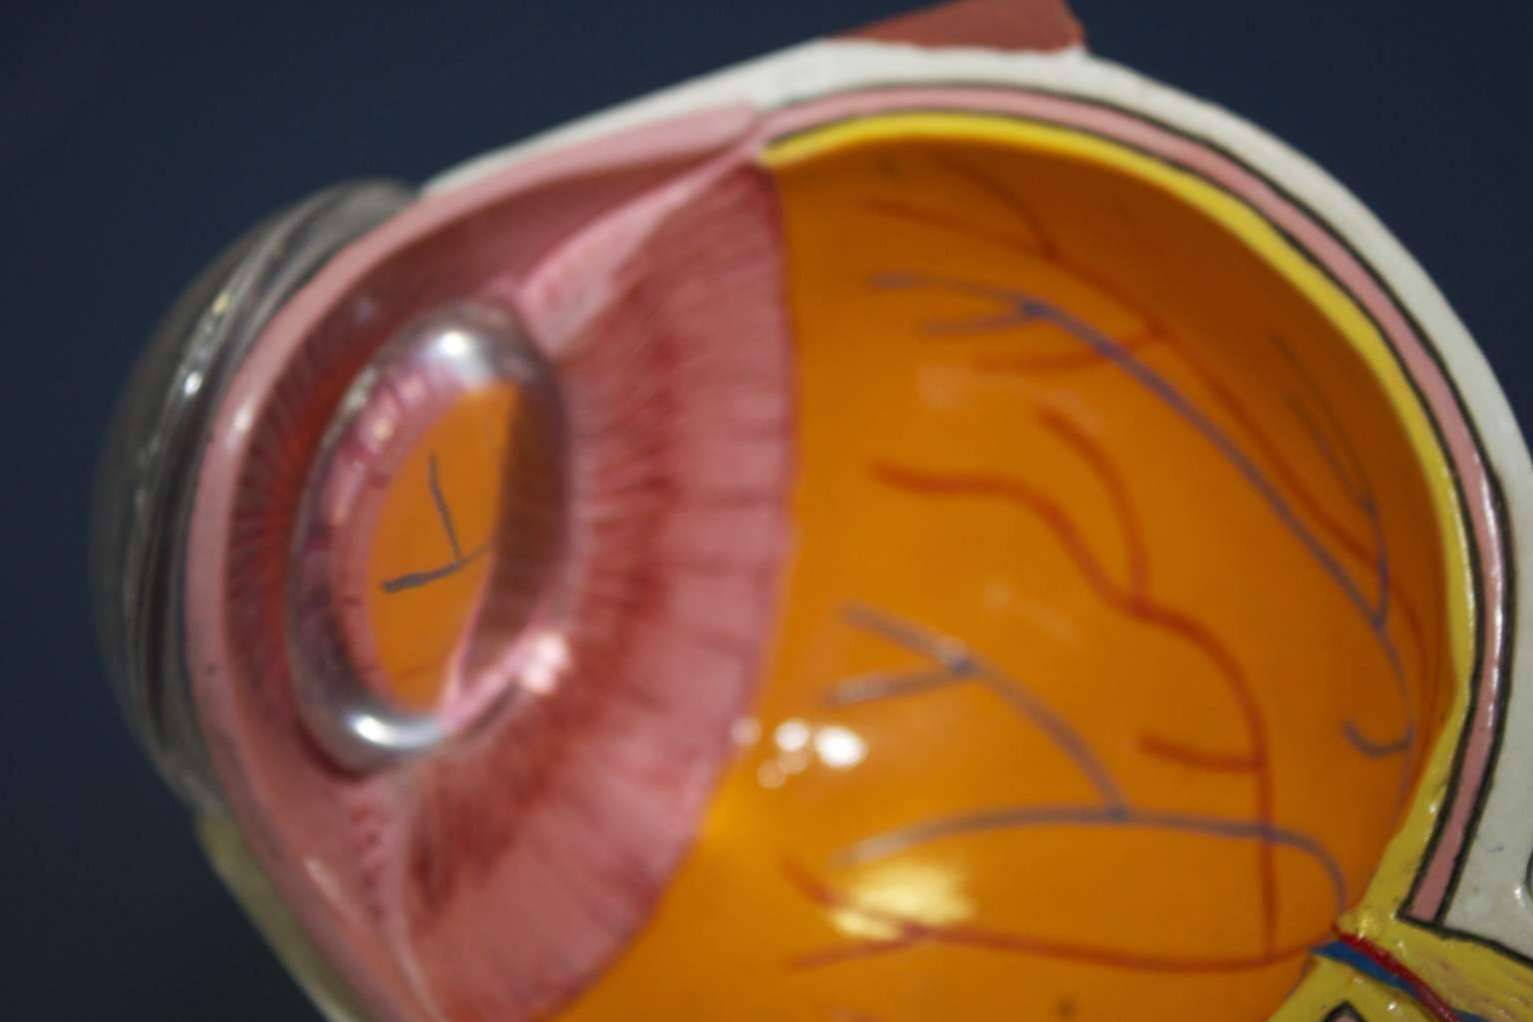  IOTT cuenta con tratamientos innovadores para casos de vista cansada, presbicia y cataratas 